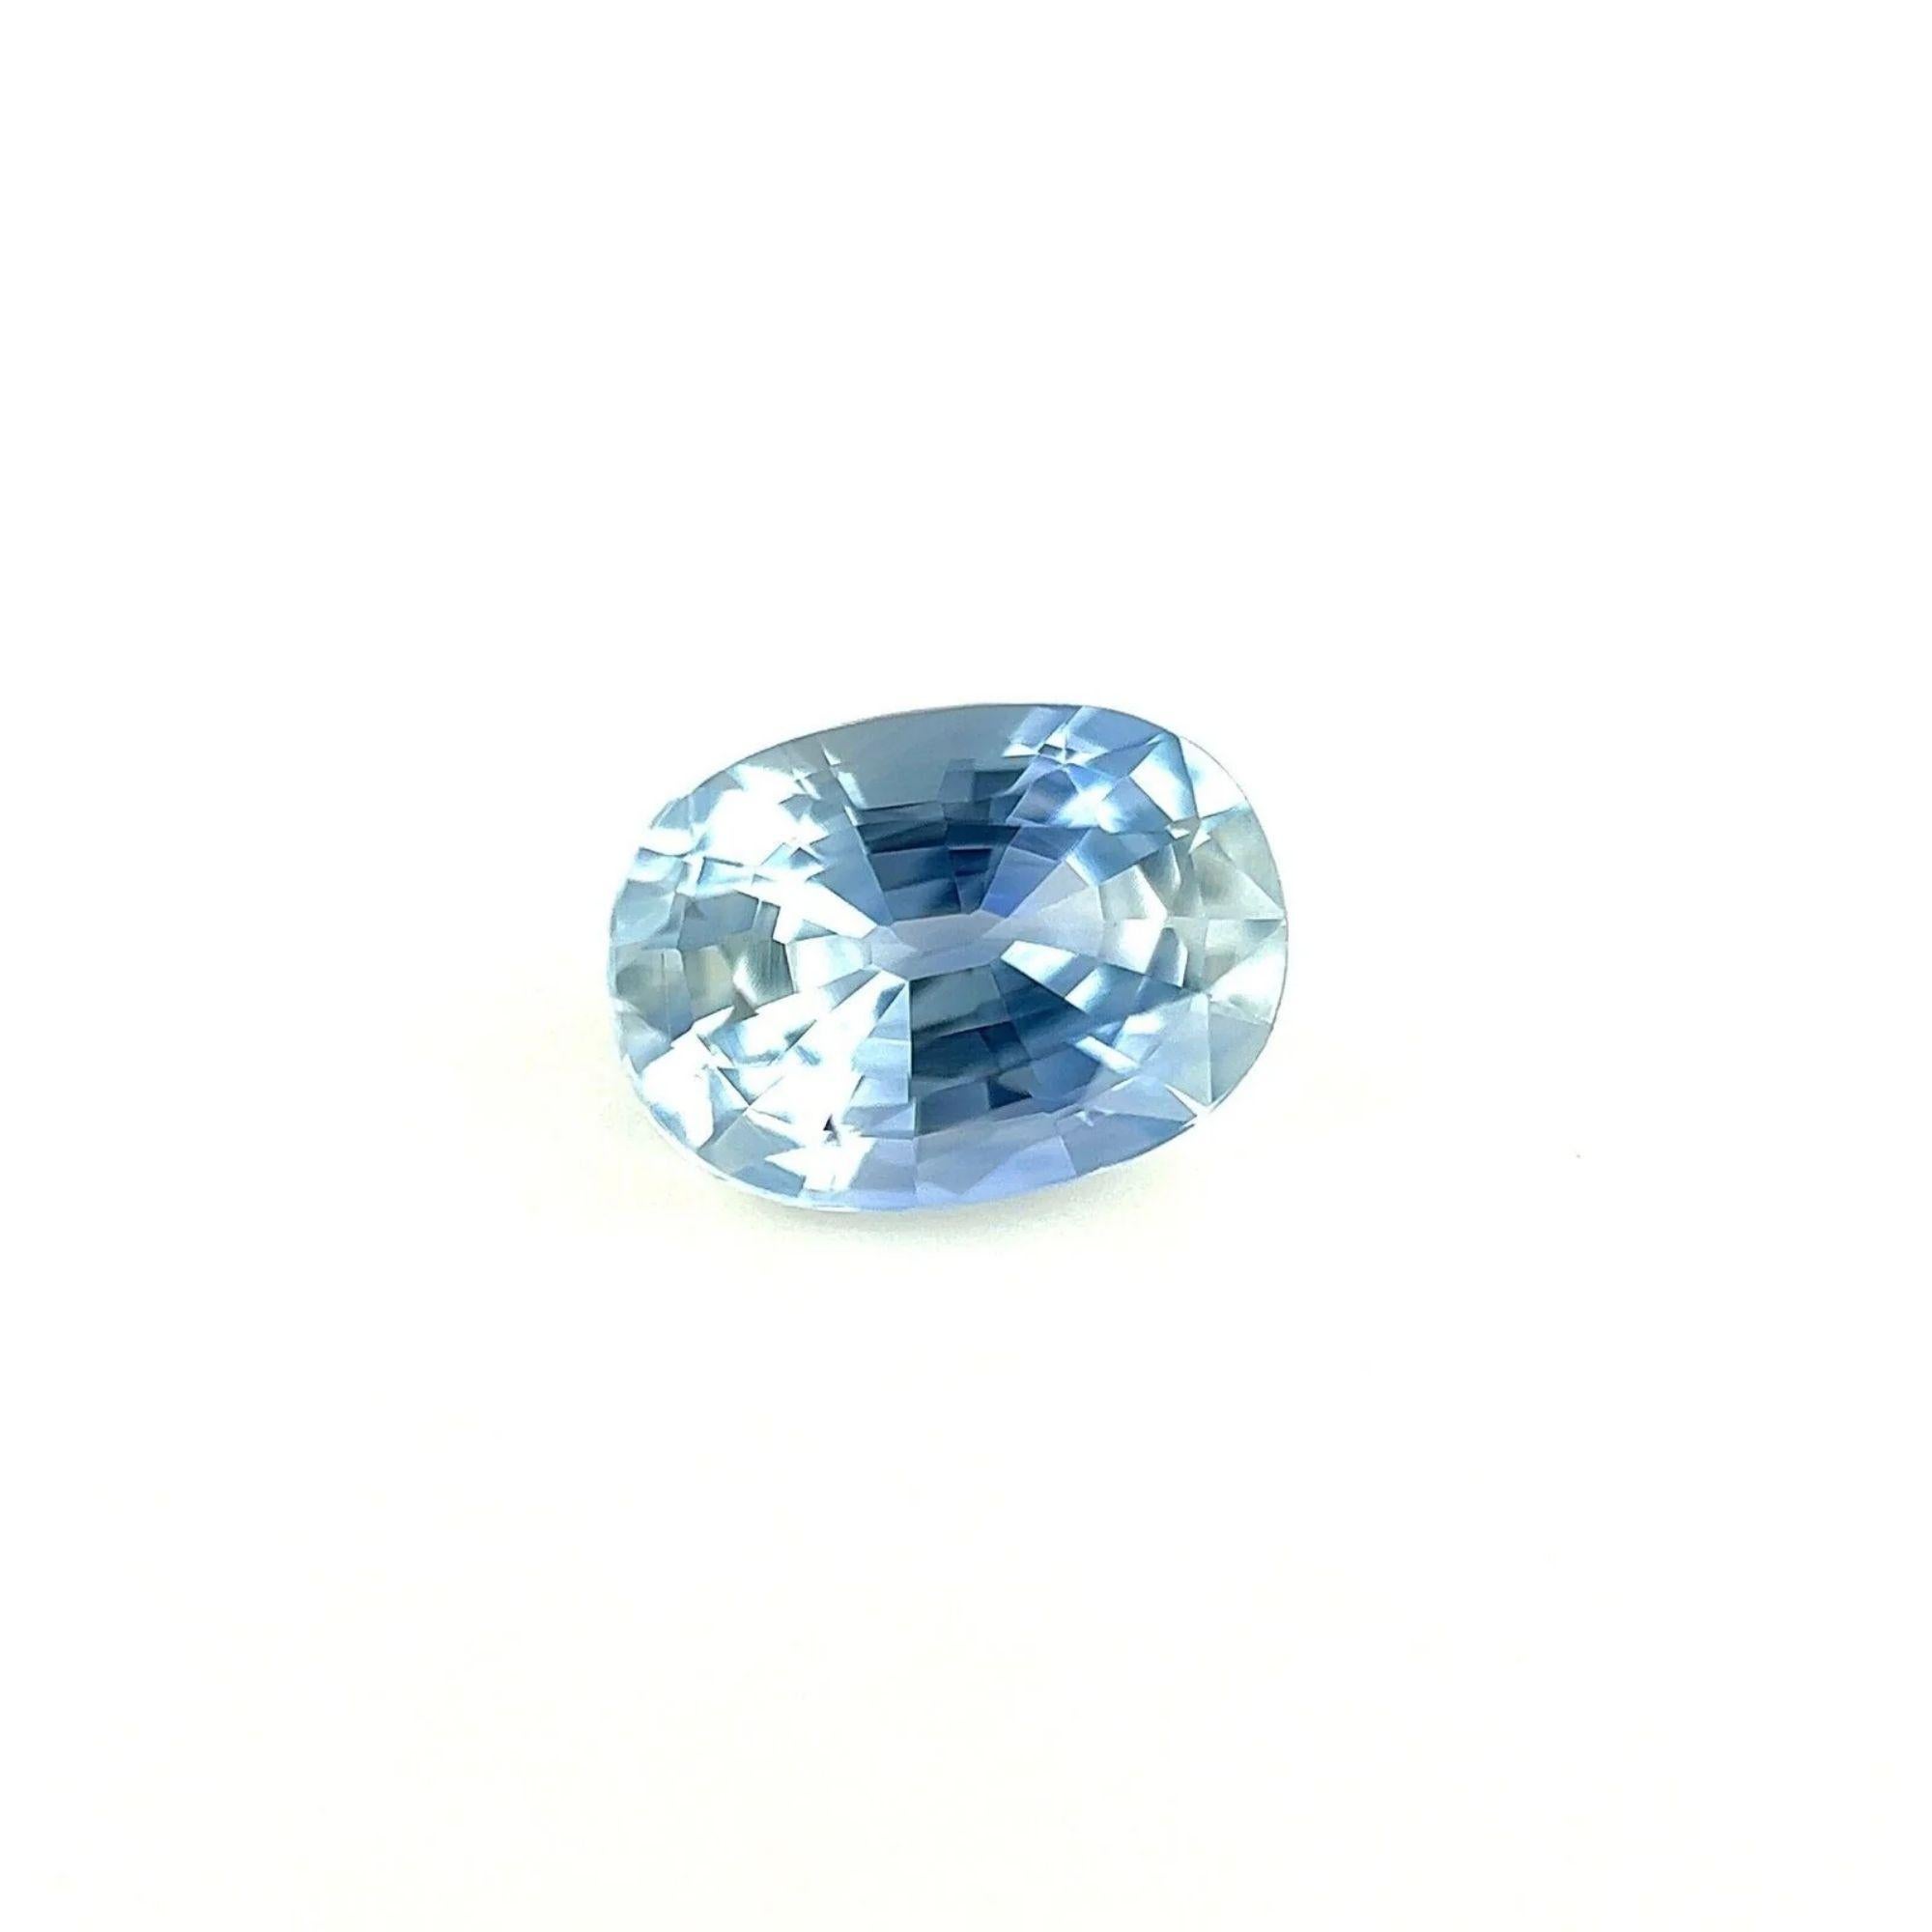 1.13ct Light Blue Ceylon Sapphire Oval Cut Loose Gemstone 7X5mm VVS

Saphir de Ceylan bleu clair naturel Pierre précieuse.
1,13 carat d'une belle couleur bleu clair et d'une excellente clarté. Pierre très propre.
Il présente également une excellente